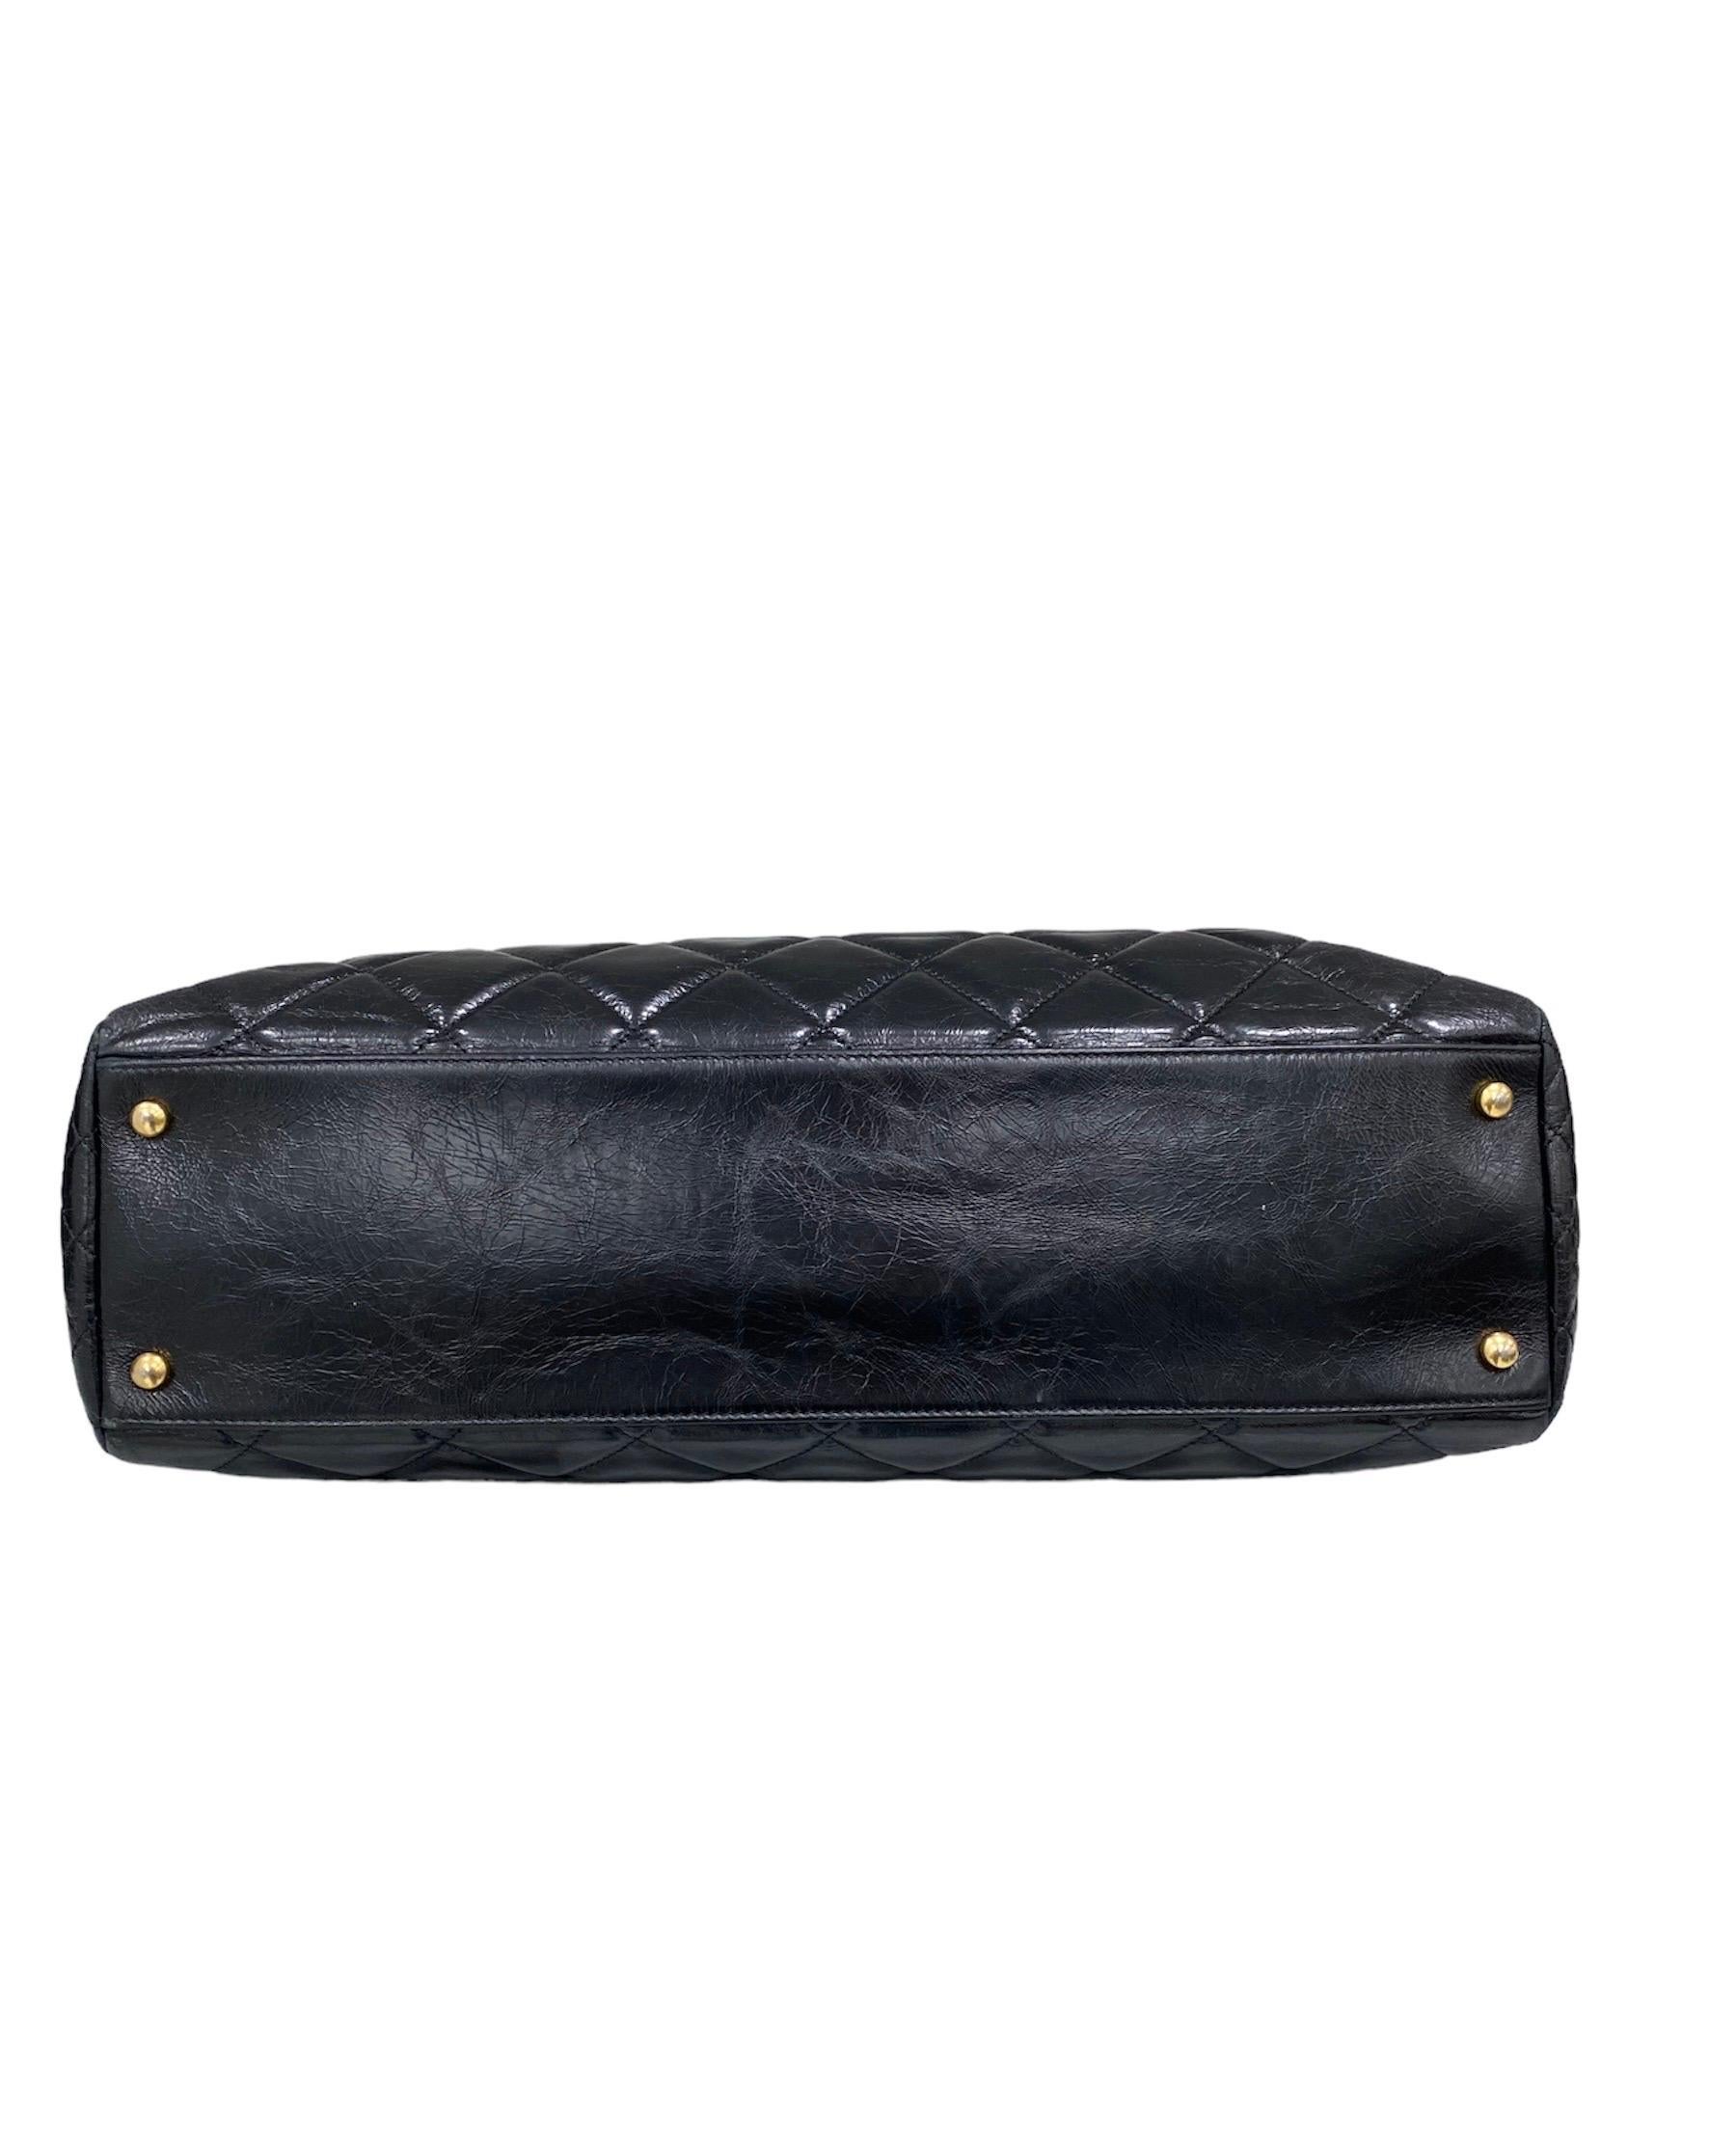 Women's 2016 Chanel Shopper Bag Black Shoulder Bag